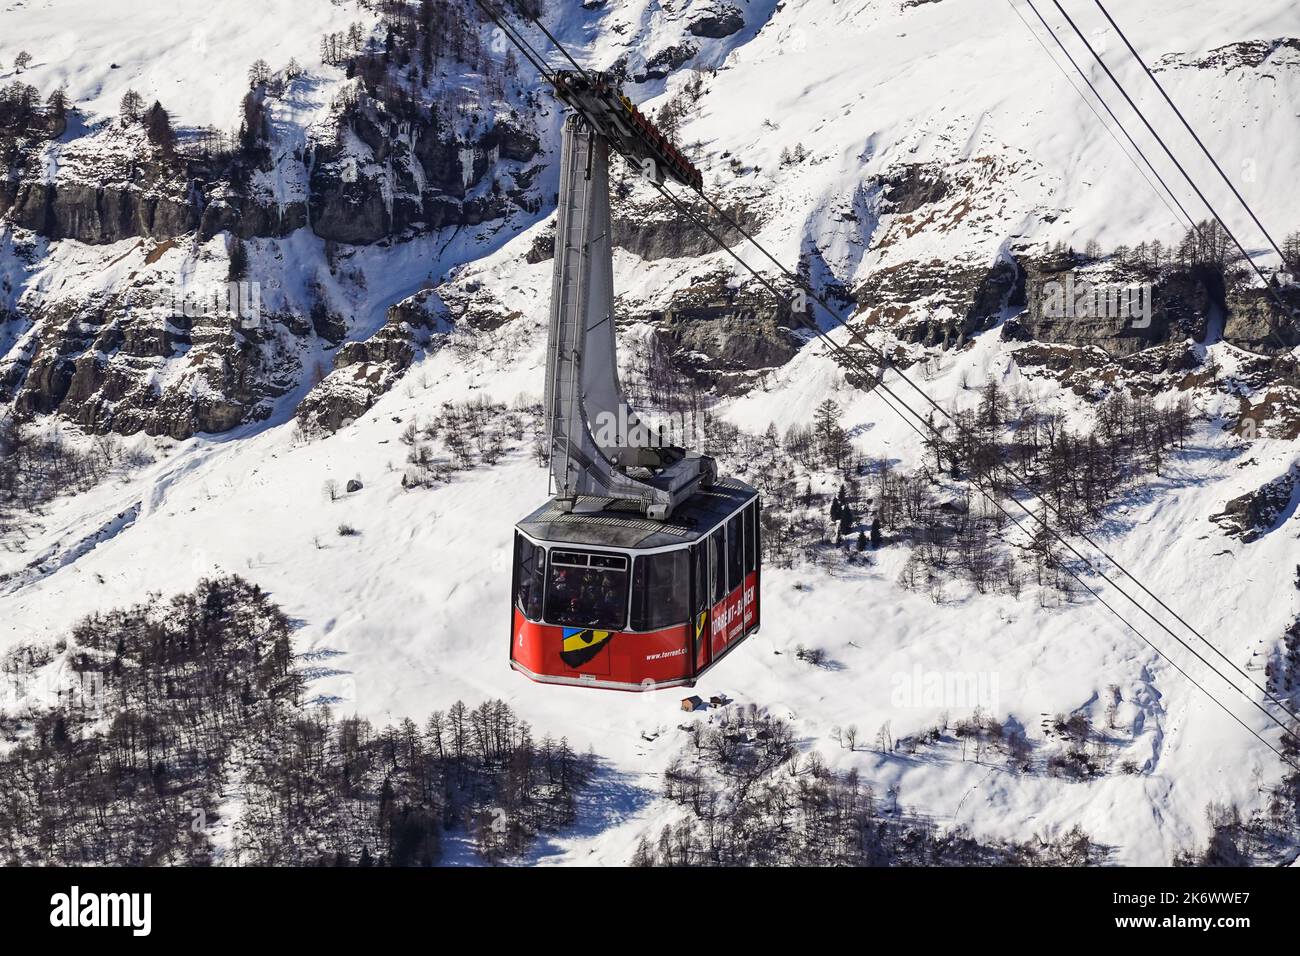 Leukerbad, Suisse - 12 février 2022 : le téléphérique du torrent Bahnen atteint son terminal dans la station de ski de Leukerbad, dans les alpes suisses, sur une période ensoleillée Banque D'Images